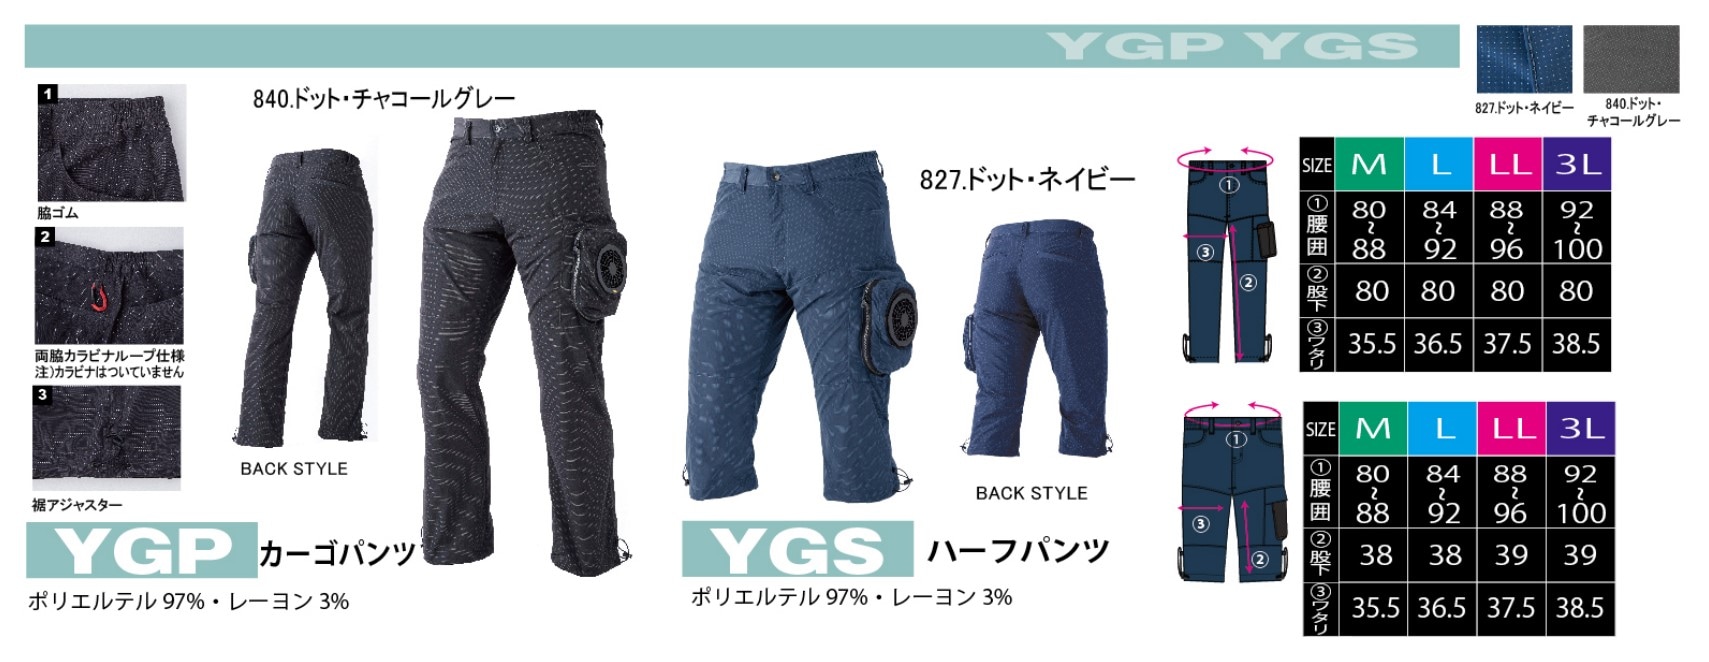 山真製鋸(YAMASHIN) 神風カーゴパンツ ケーブルレスファン YGP-N1-3L-SET ドット・ネイビー 3Lサイズ - 2